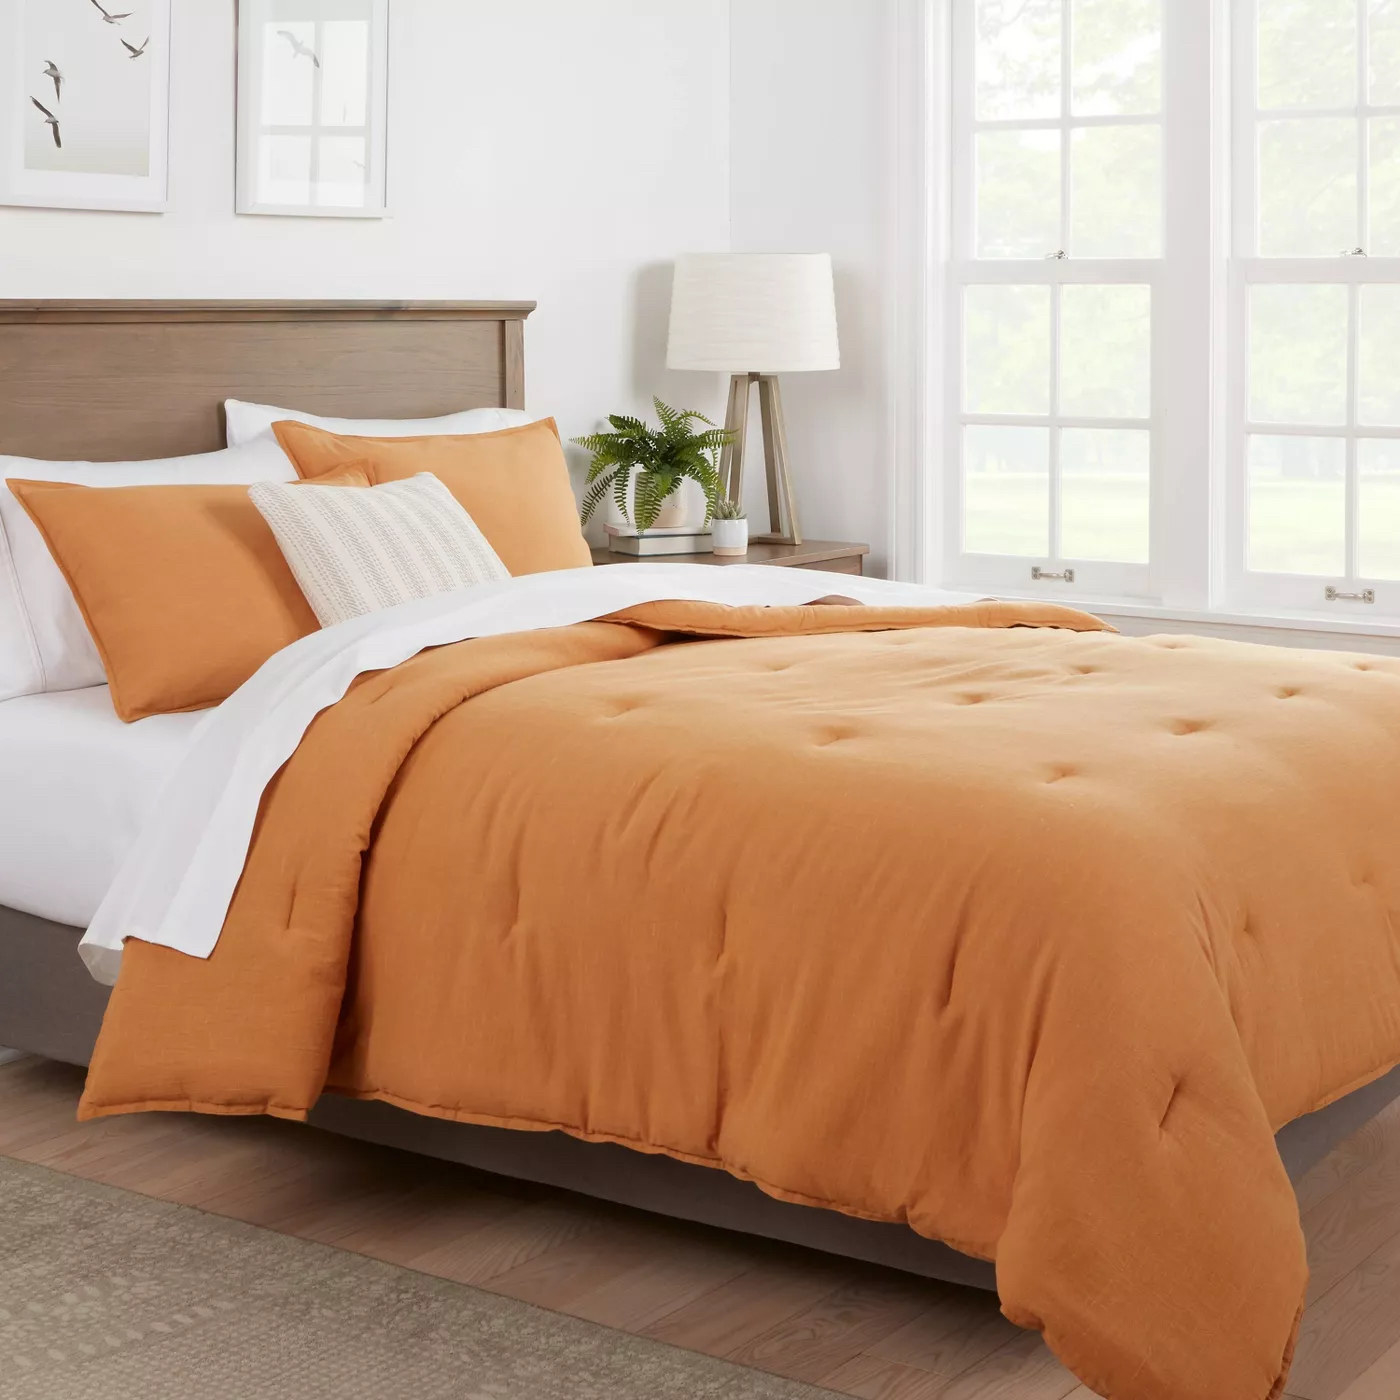 Orange comforter on bed